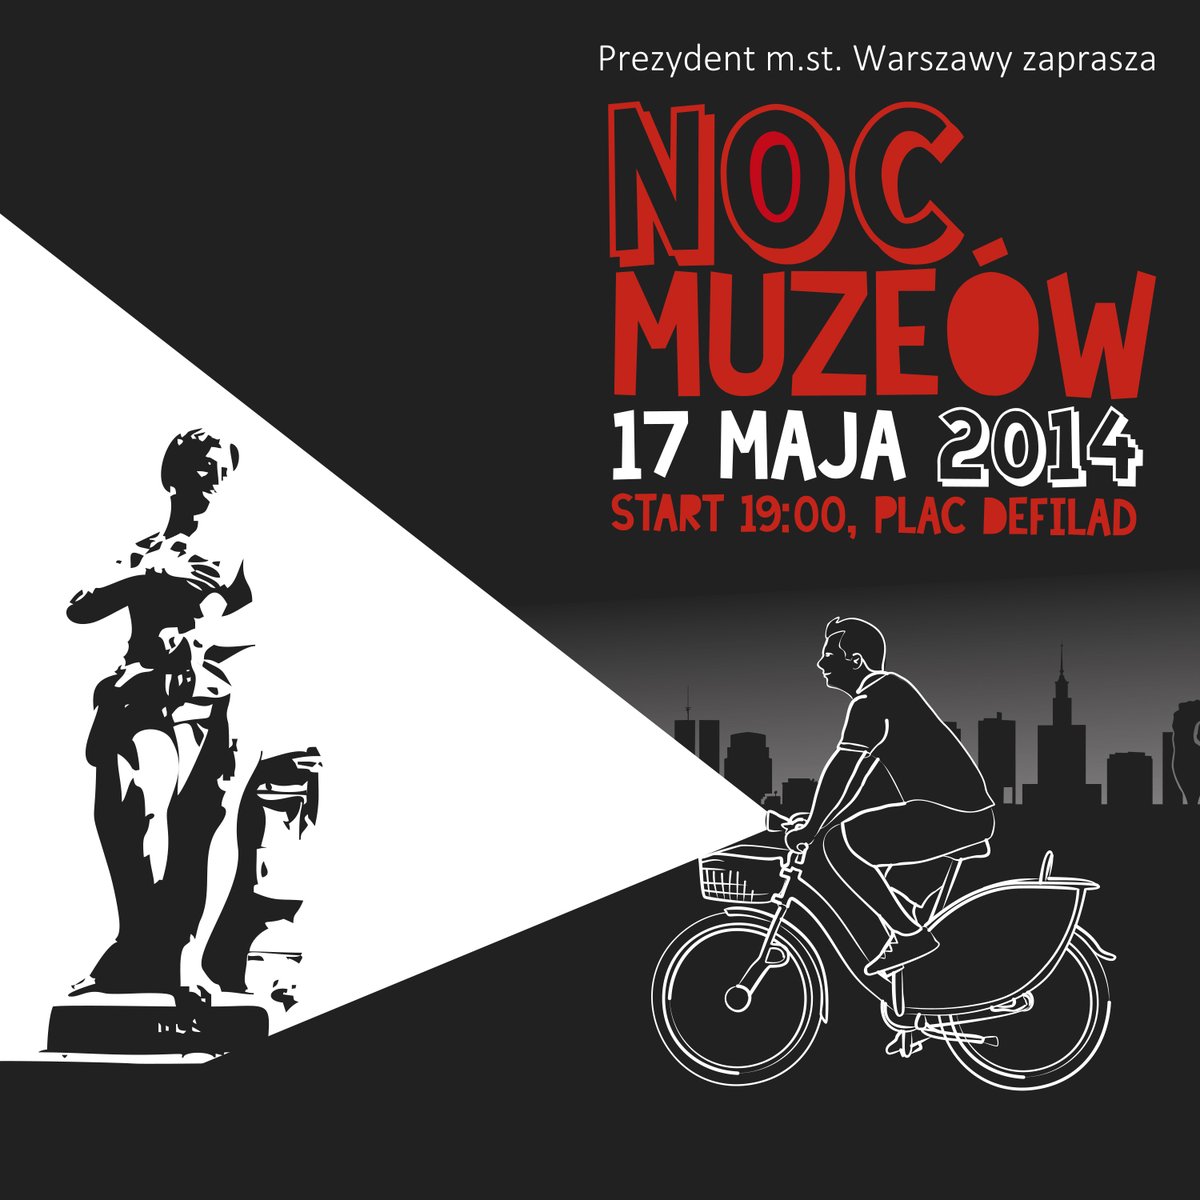 Kto jedzie rowerem na #NocMuzeów? W 2014 roku na plakat załapał się też jednoślad. 😎 #Warszawa #StolicaWolnegoCzasu @trzaskowski_ @AldonaMachnow1 @kulturalnawawa